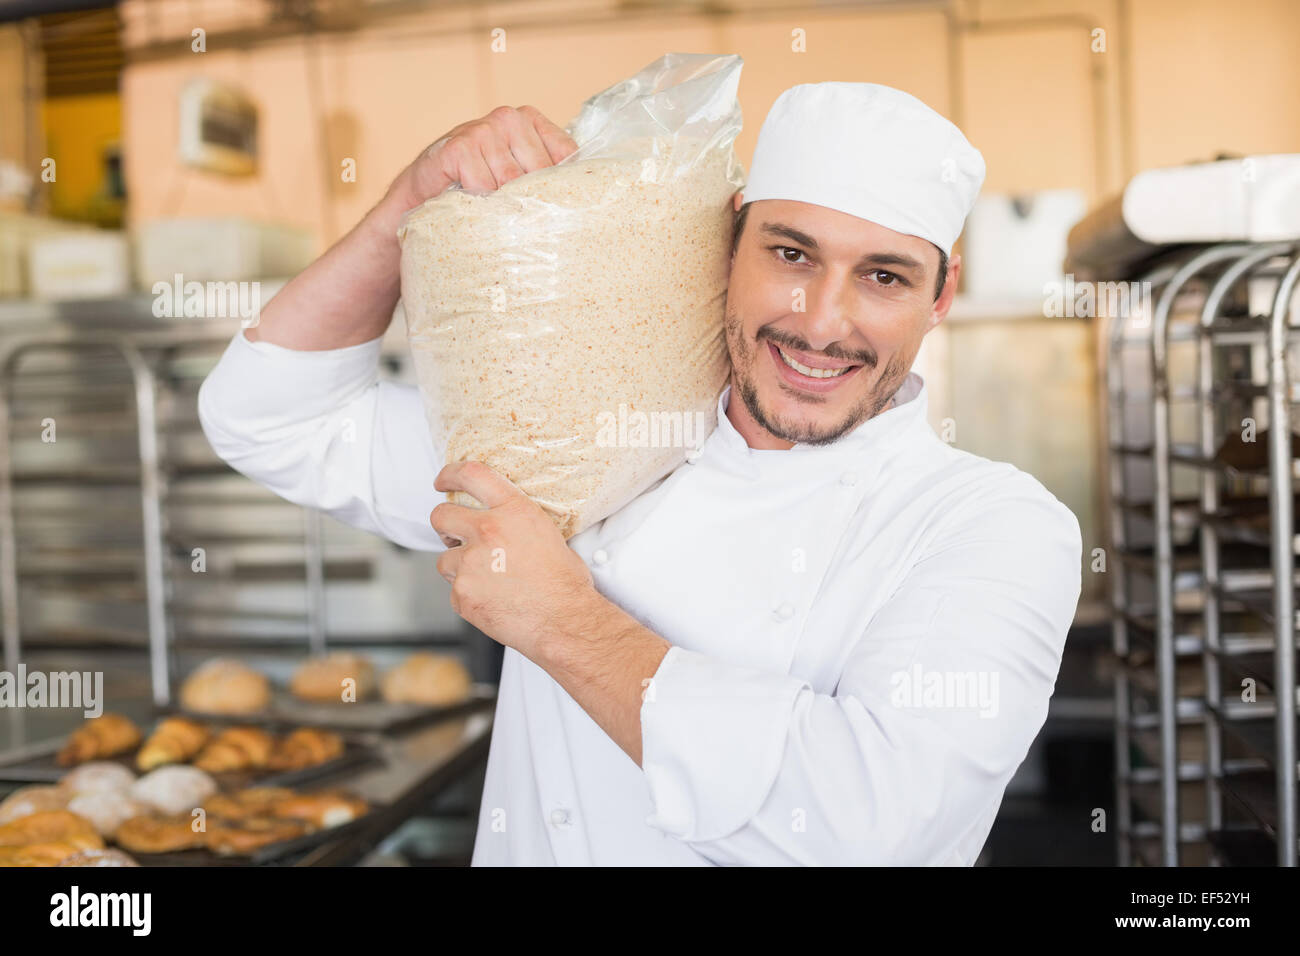 Smiling baker holding bag of rising dough Stock Photo